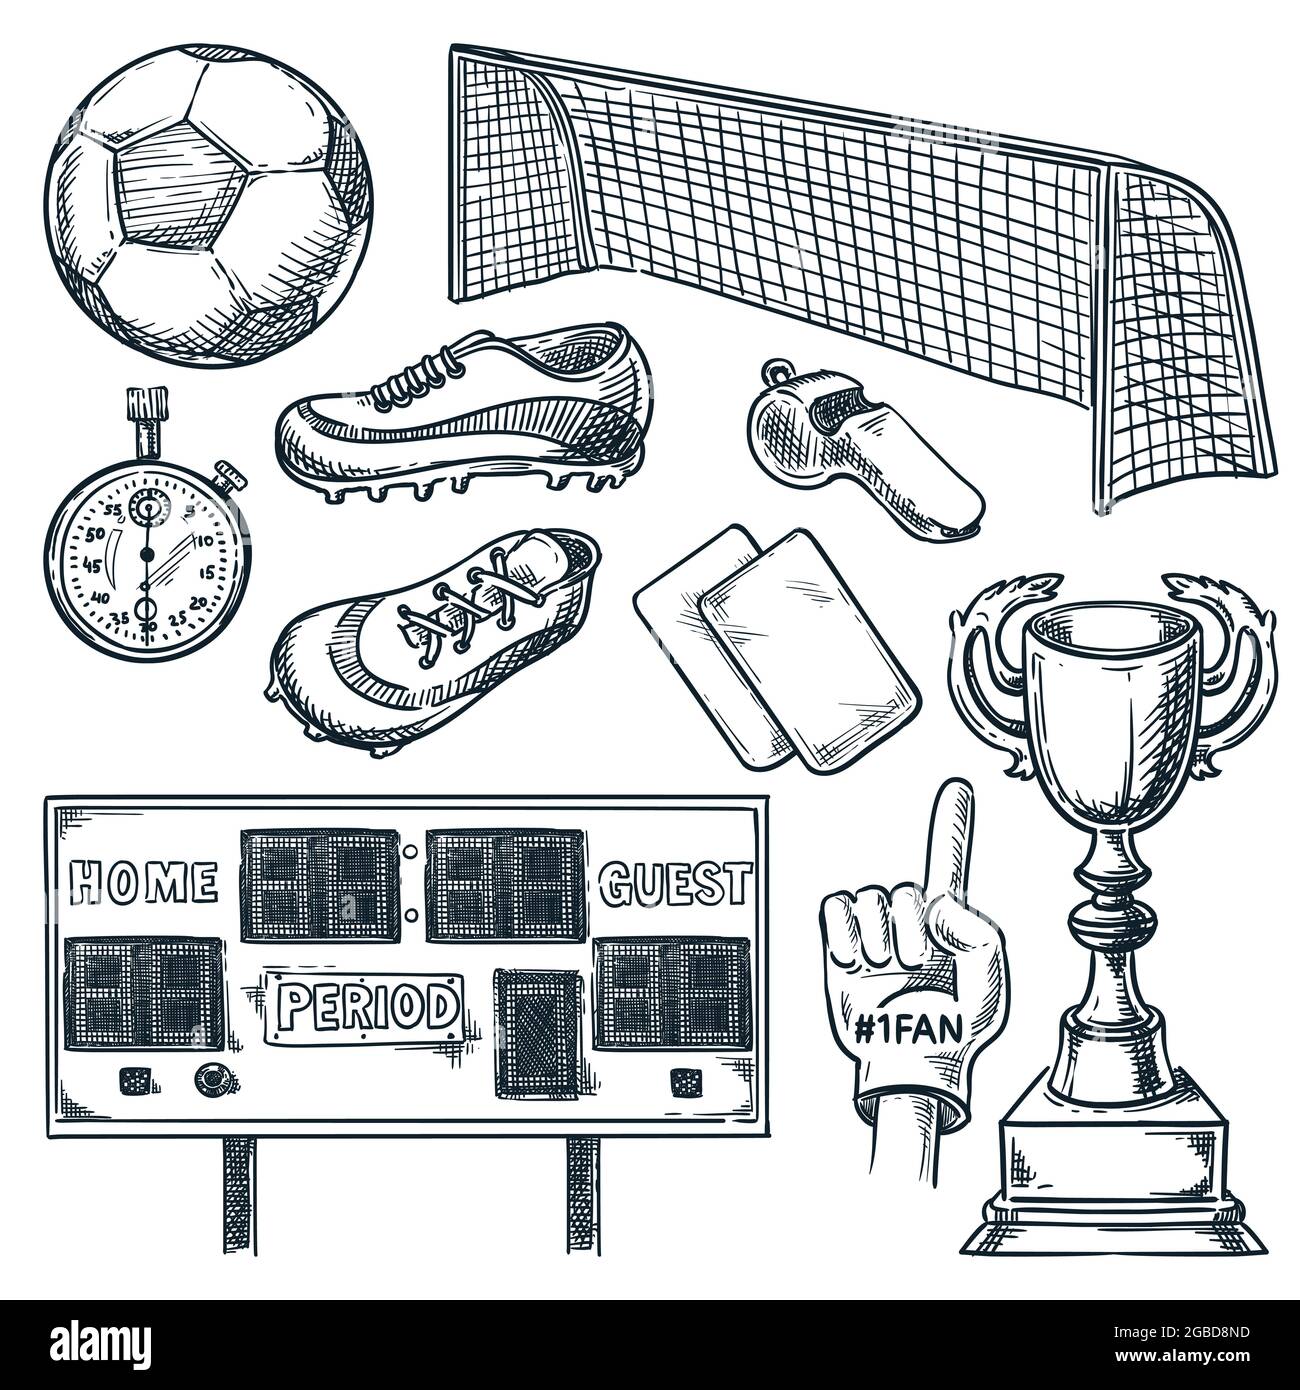 Fußballsportausrüstung. Vektorgrafik mit handgezeichneter Skizze. Symbole für Fußball, Anzeigetafel, Tor und Pokal, isoliert auf weißem Hintergrund Stock Vektor